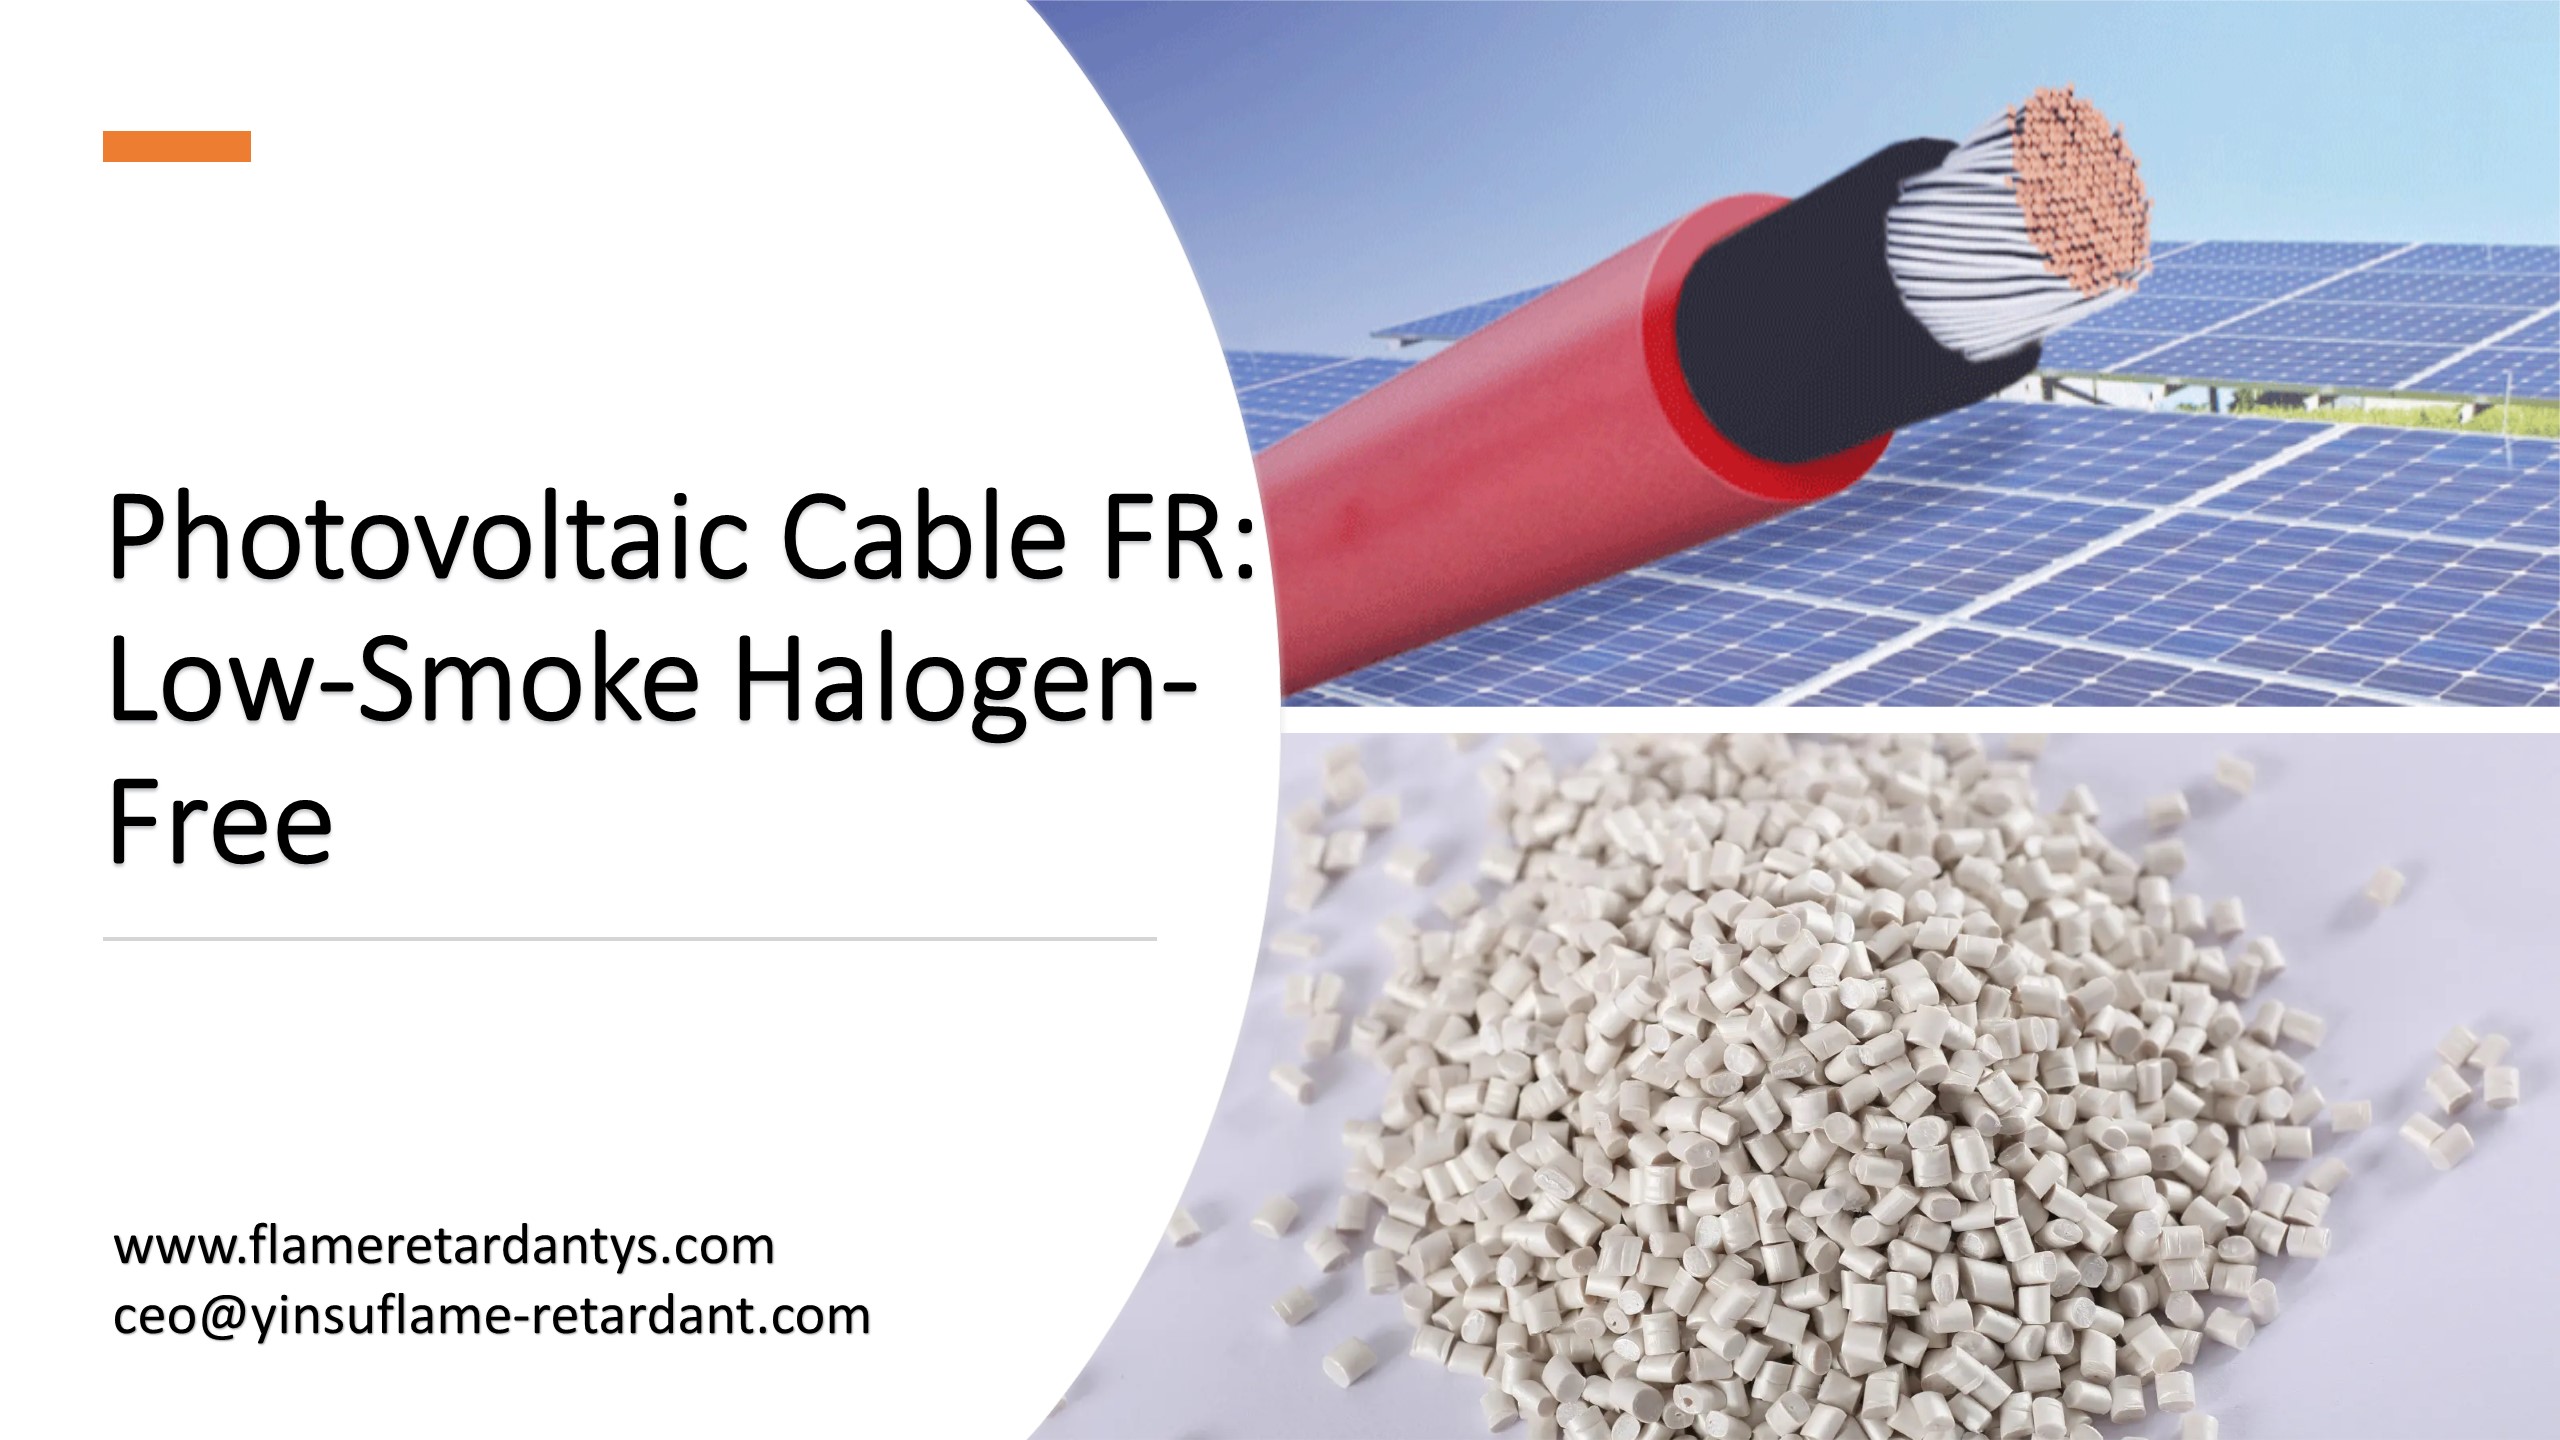 الكابل الكهروضوئي FR: خالي من الهالوجين منخفض الدخان